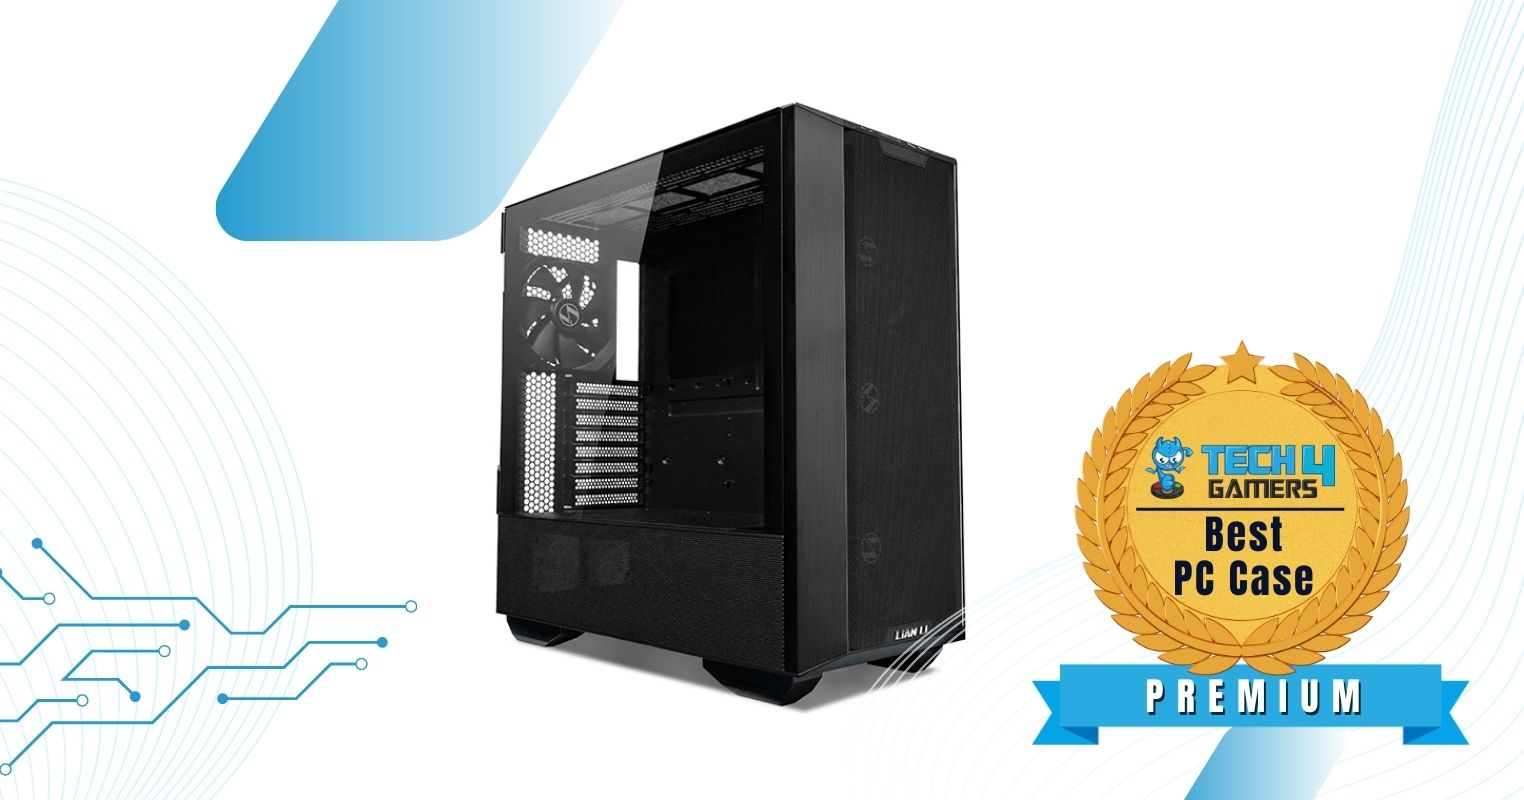 LIAN LI Lancool III - Best Premium PC Case